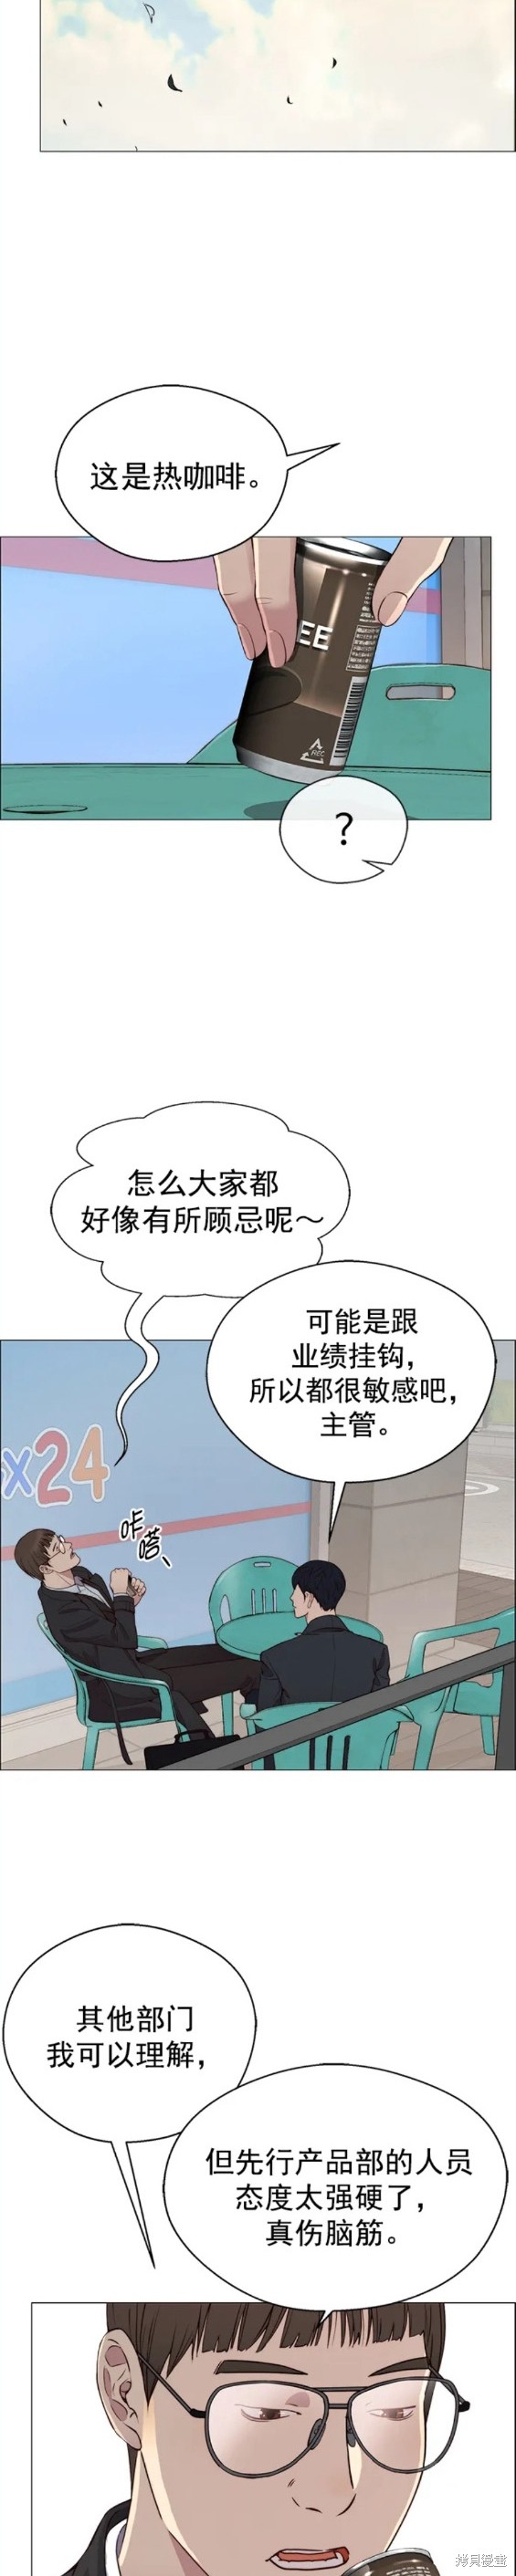 男子汉漫画,第139话14图